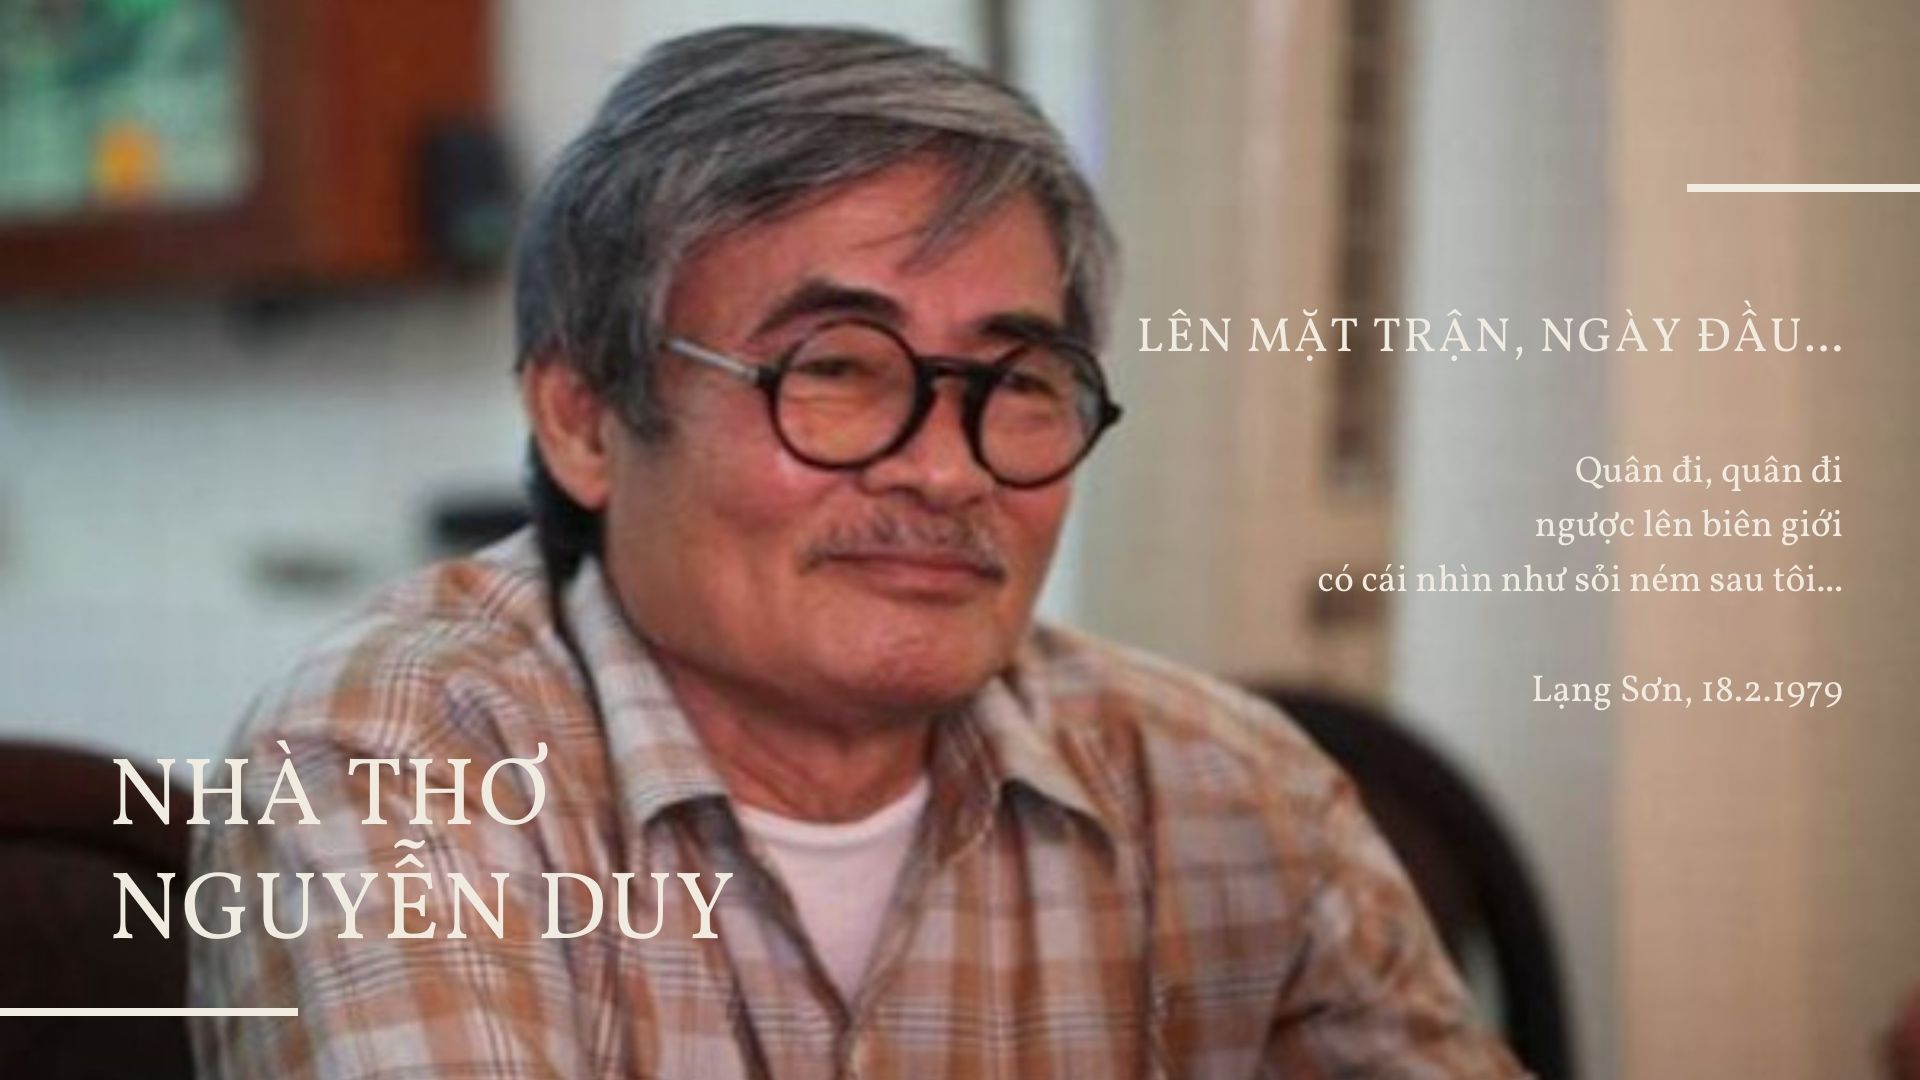 YouTuber Thơ Nguyễn giàu cỡ nào